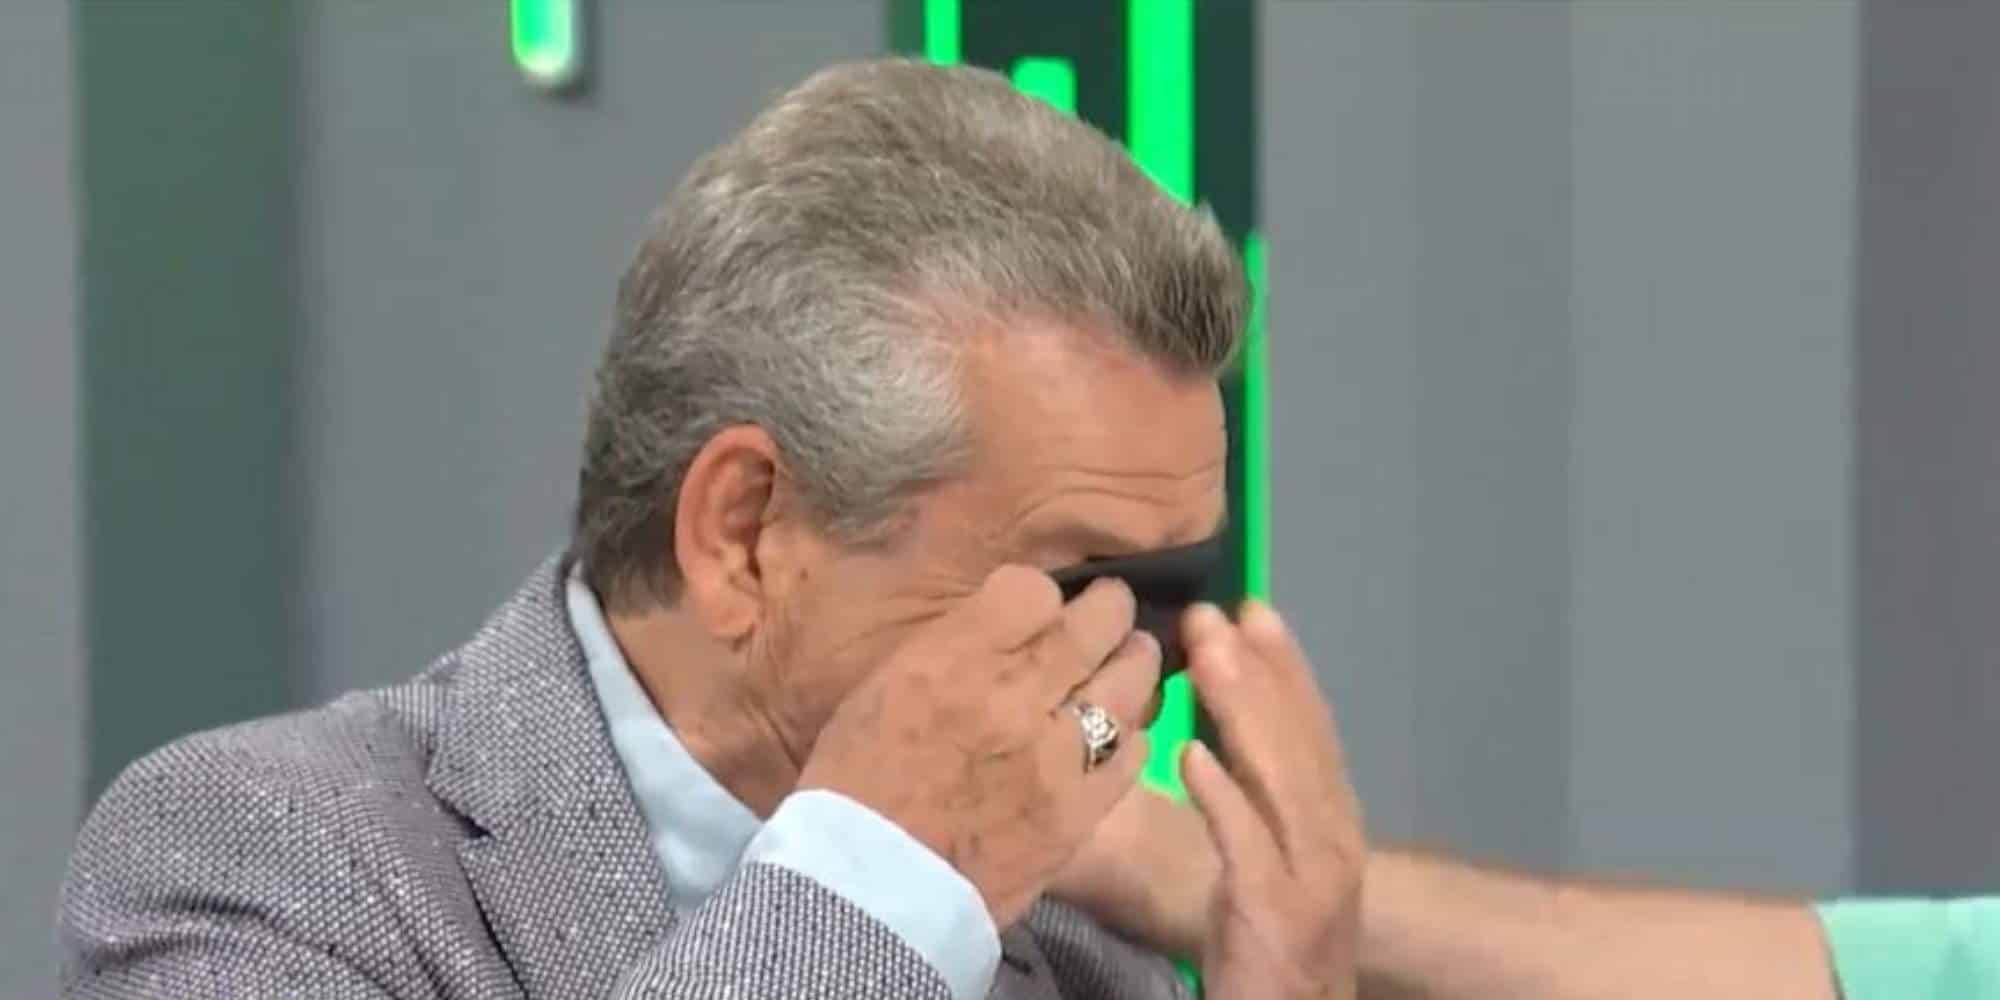 Ο Γιώργος Μαργαρίτης σκουπίζει τα δάκρυά του στην εκπομπή της ΕΡΤ